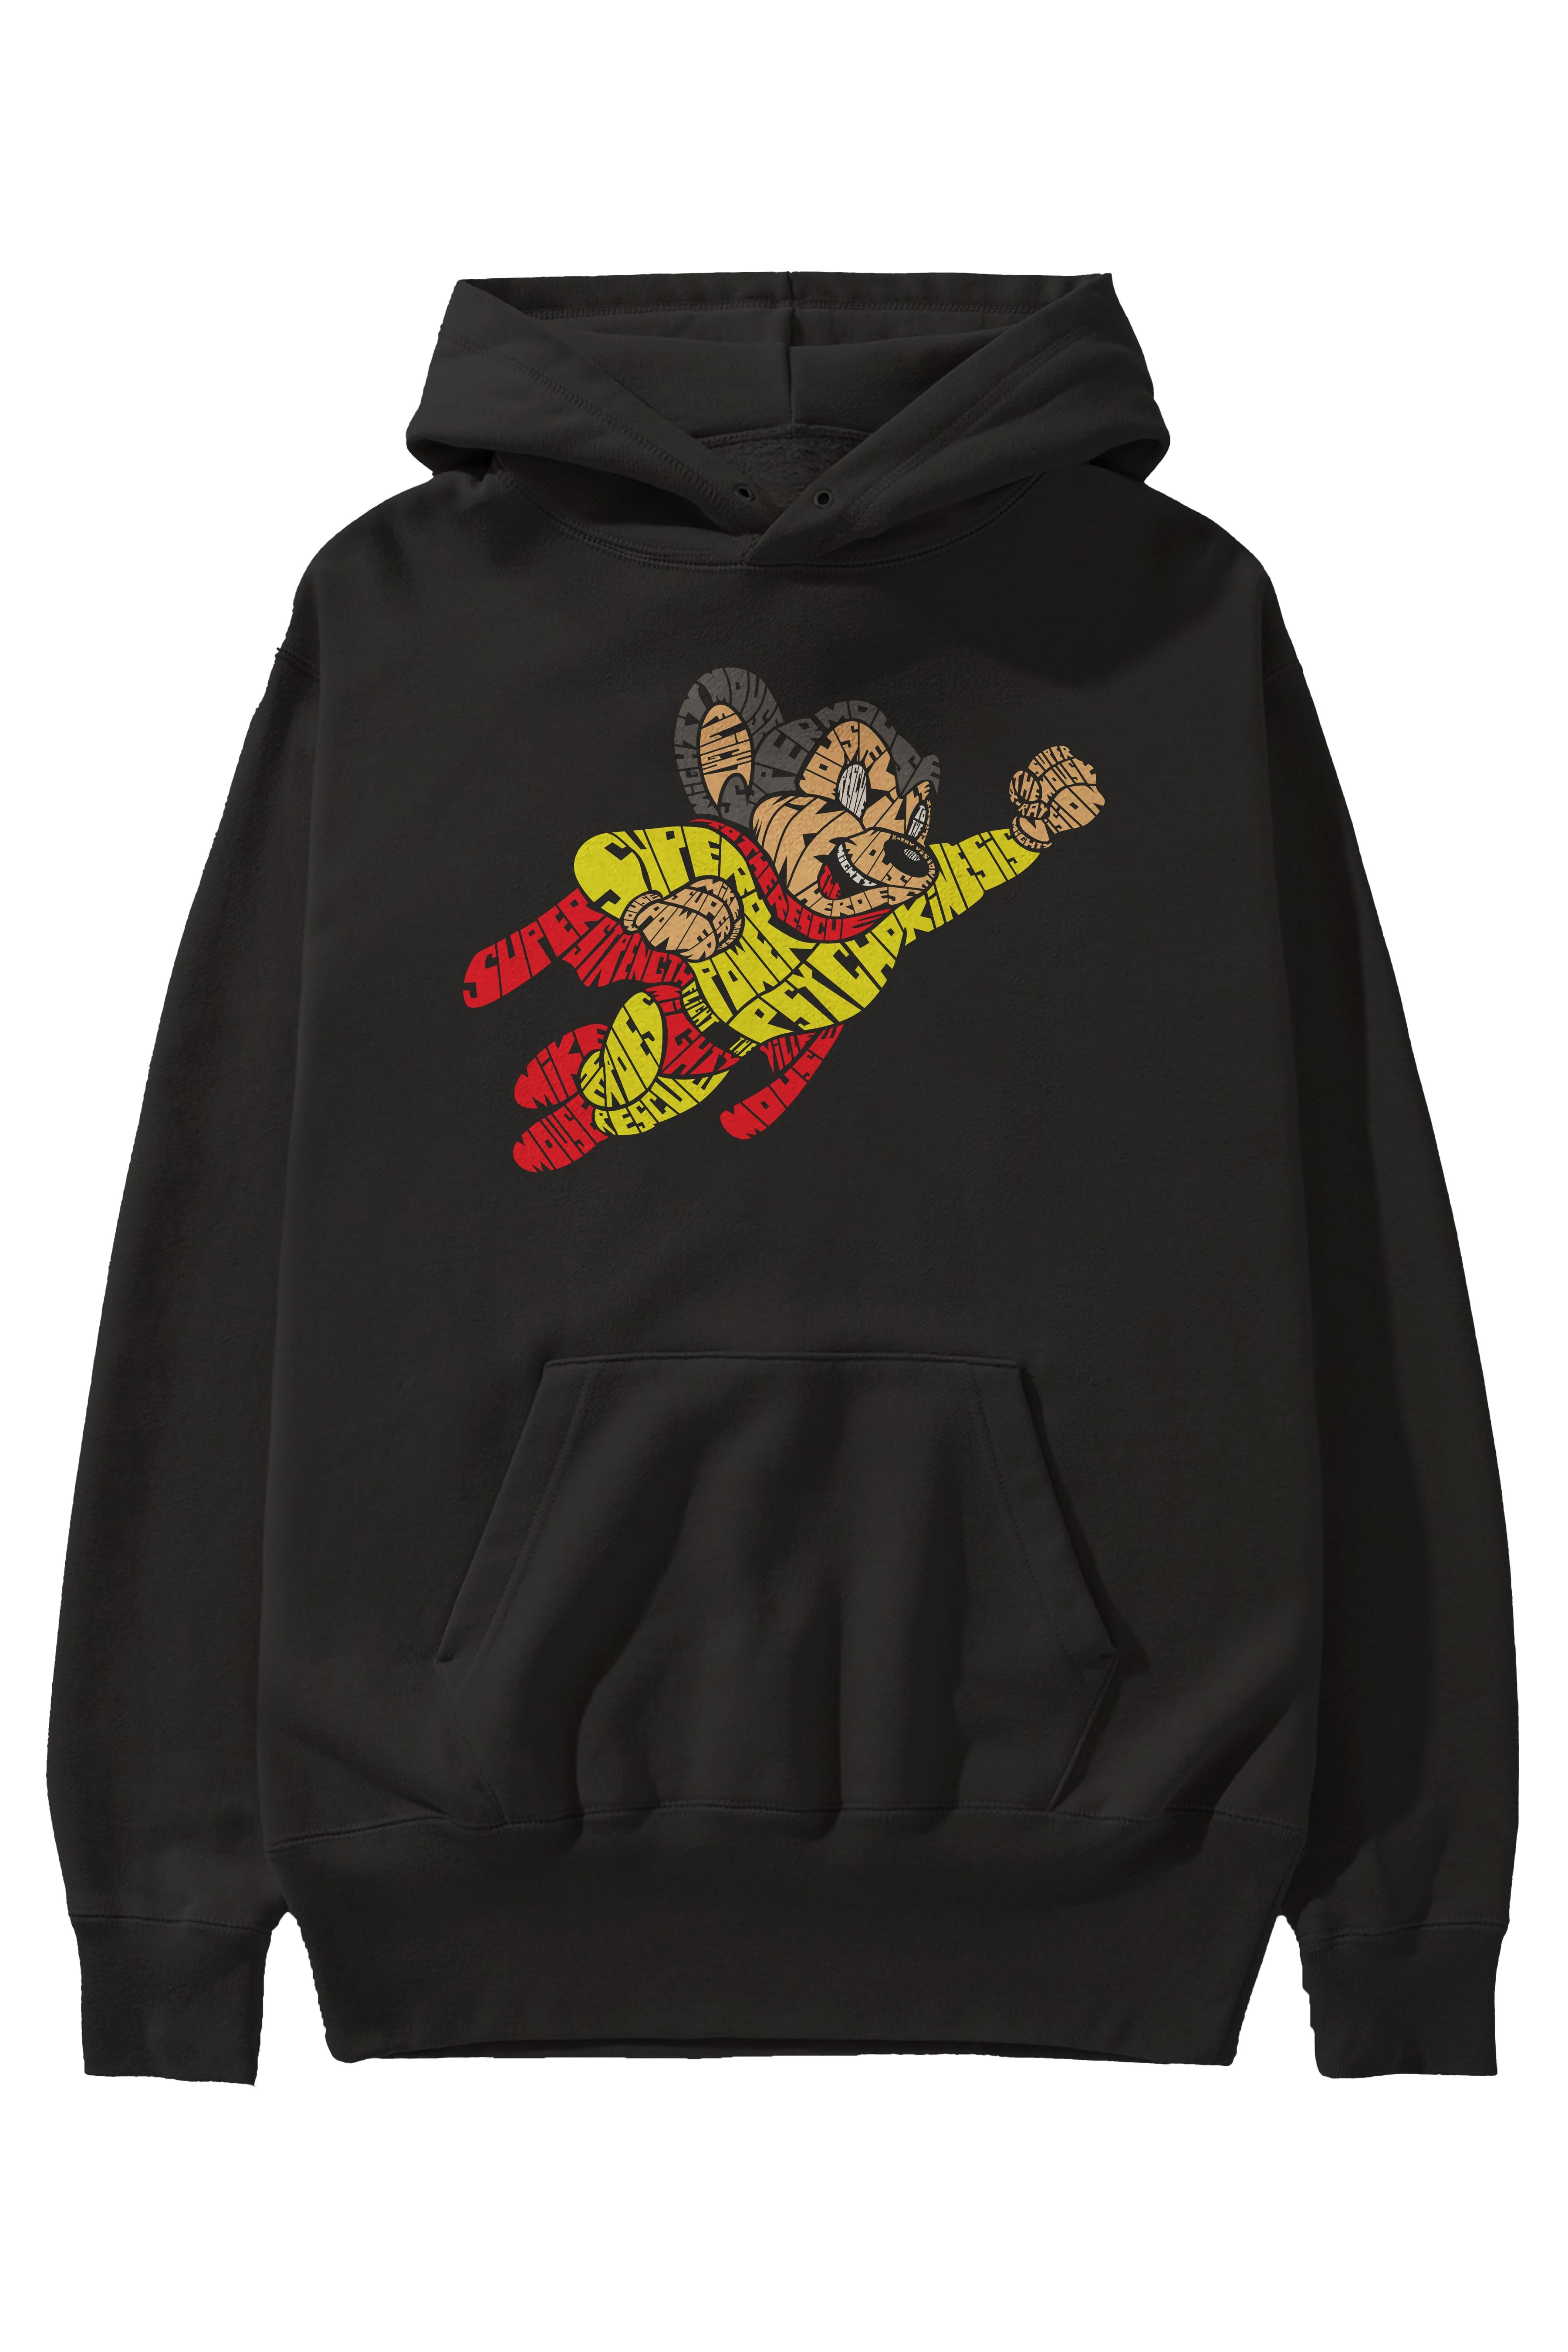 Mighty Mouse Ön Baskılı Hoodie Oversize Kapüşonlu Sweatshirt Erkek Kadın Unisex